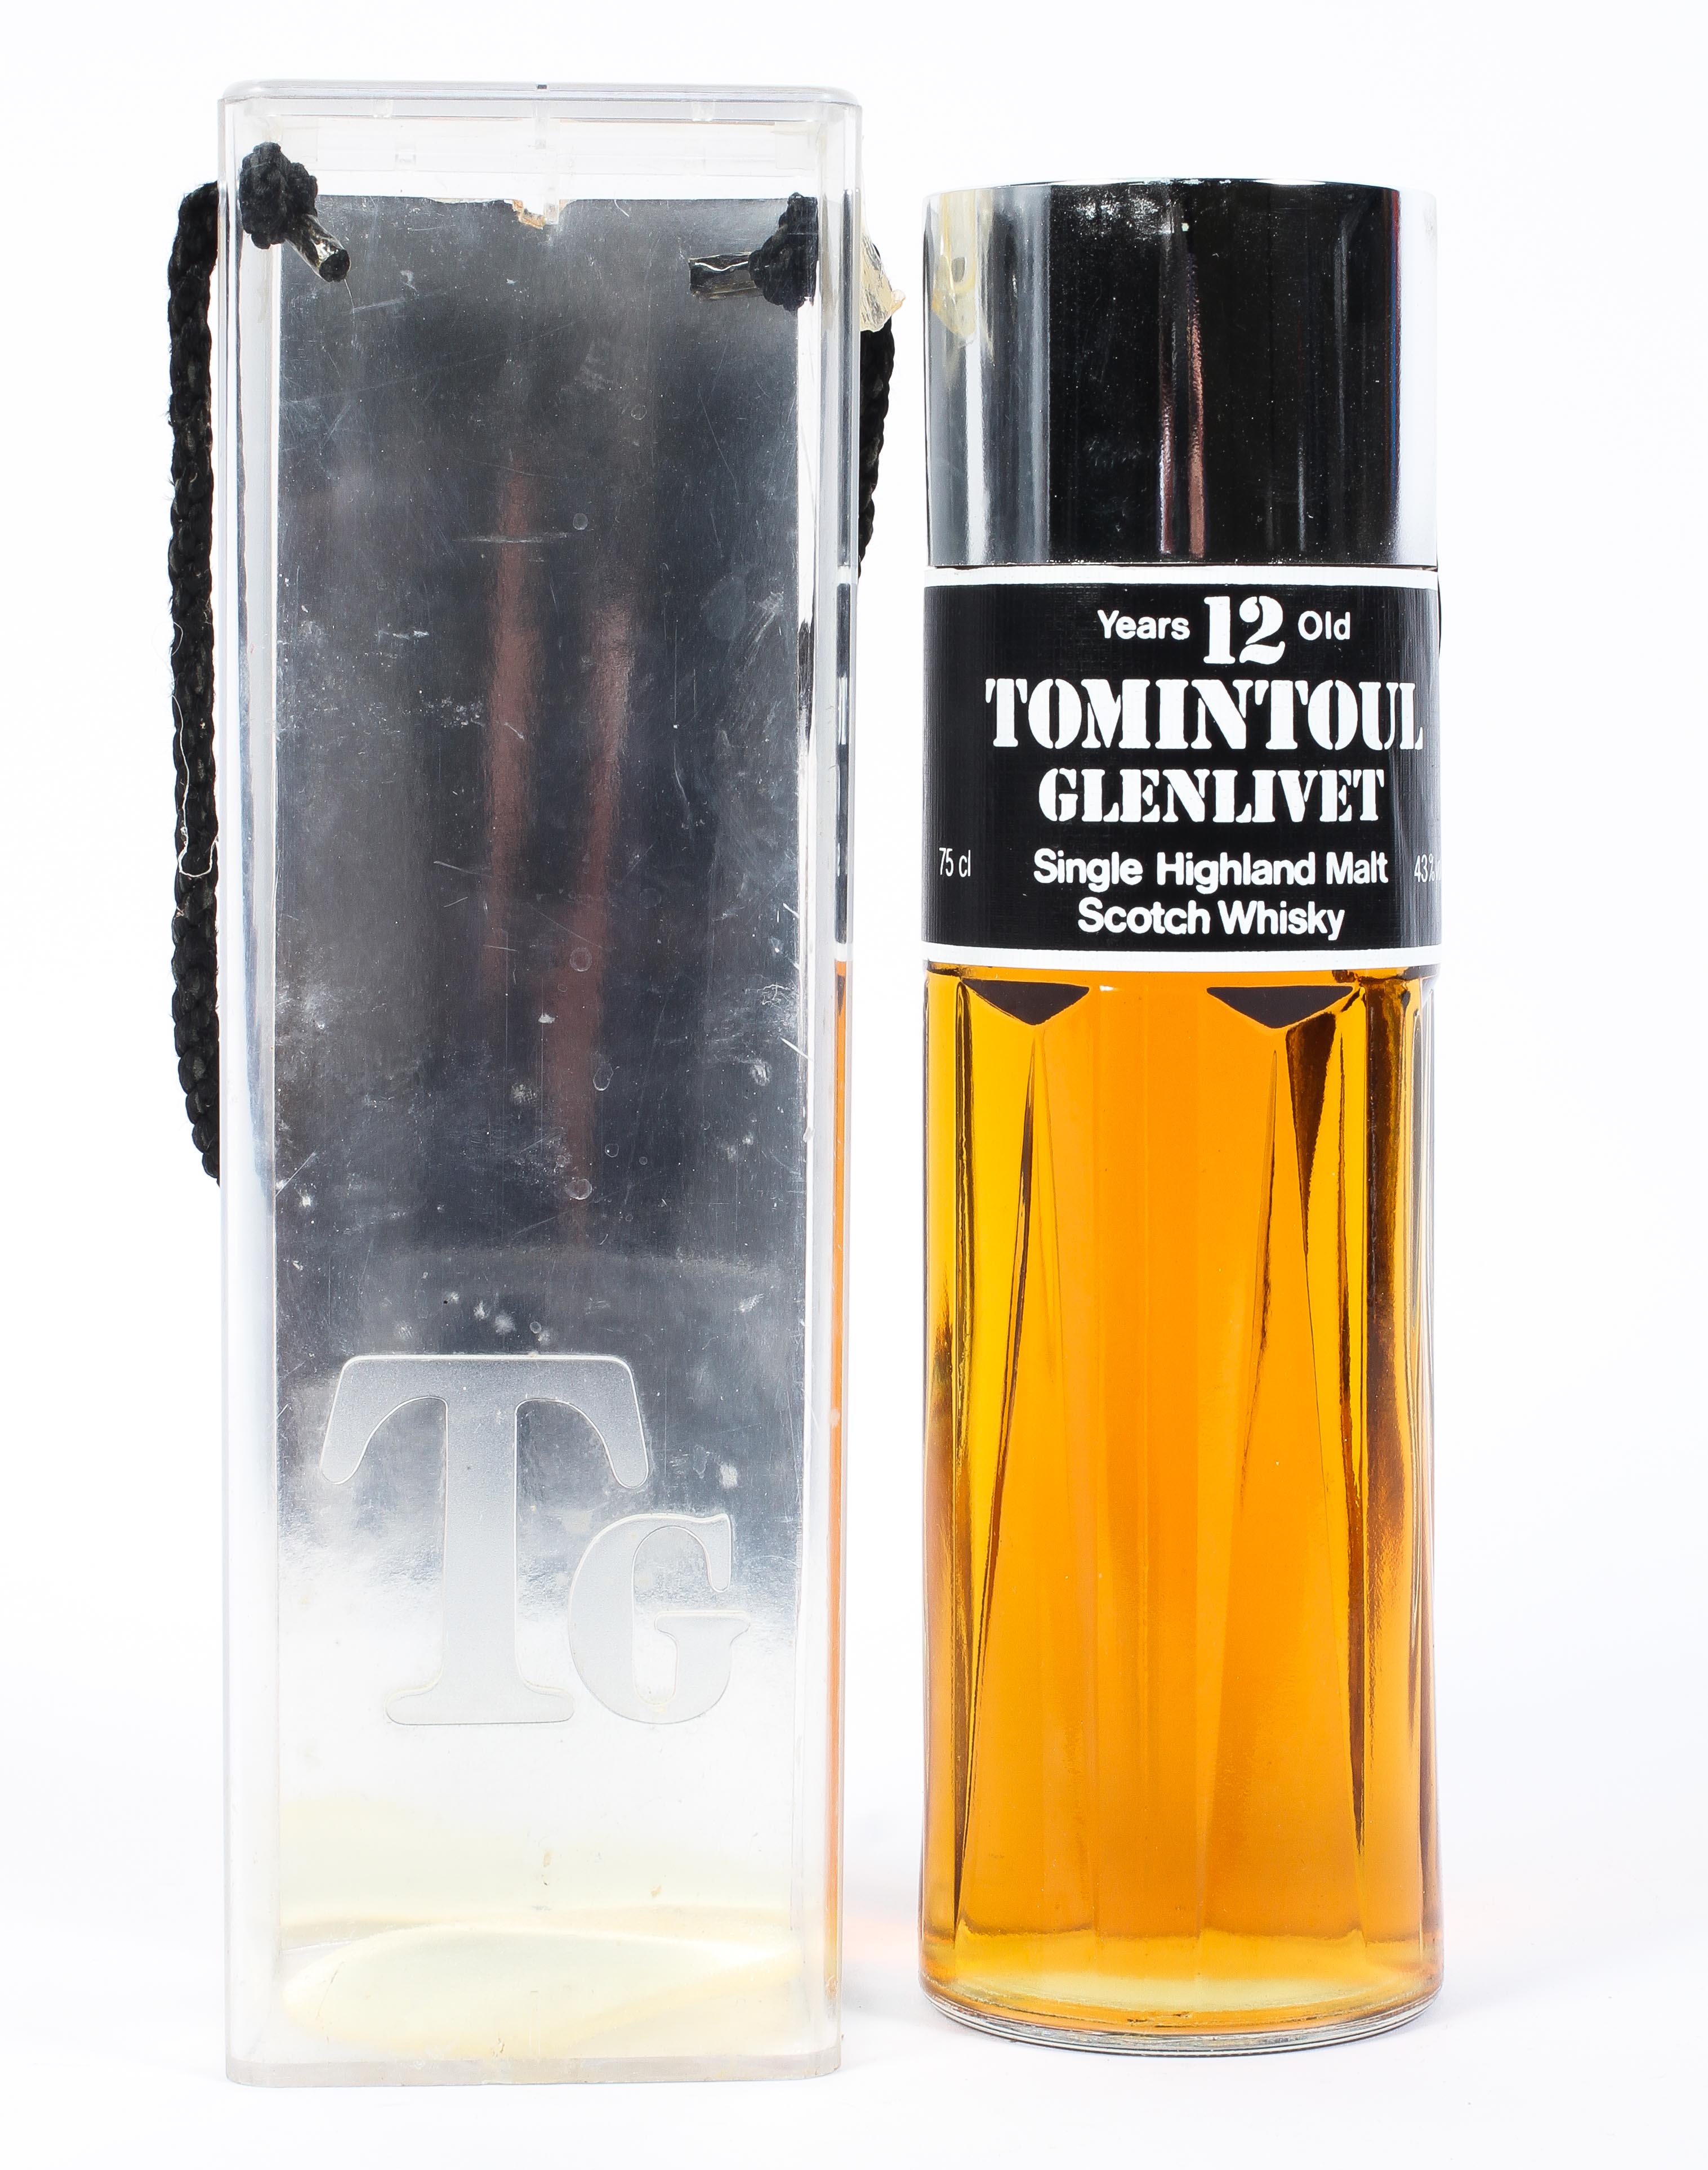 Tomintouil Glenlivet 12 year old single Highland malt Scotch whisky, 75 cl, 43% Vol,